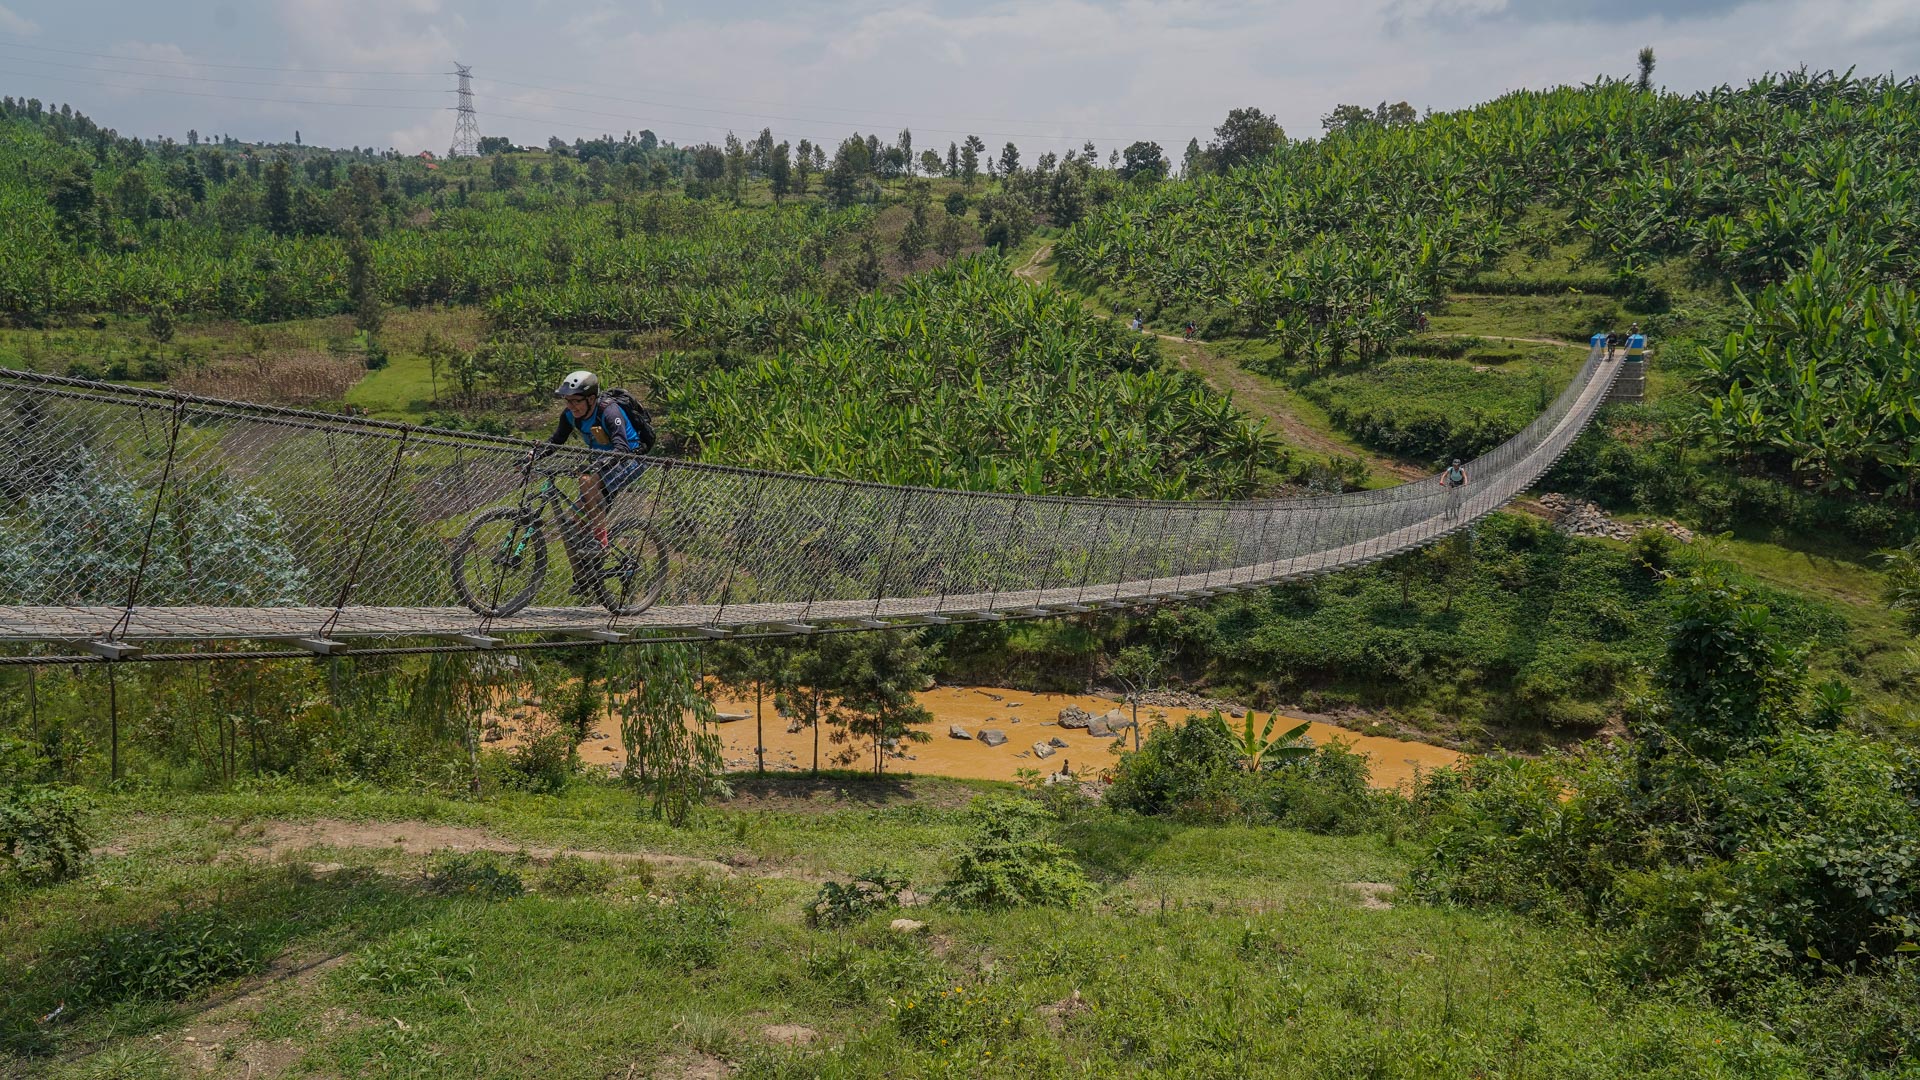 bon suspendu himalayen au dessus d'une rivière du Rwanda